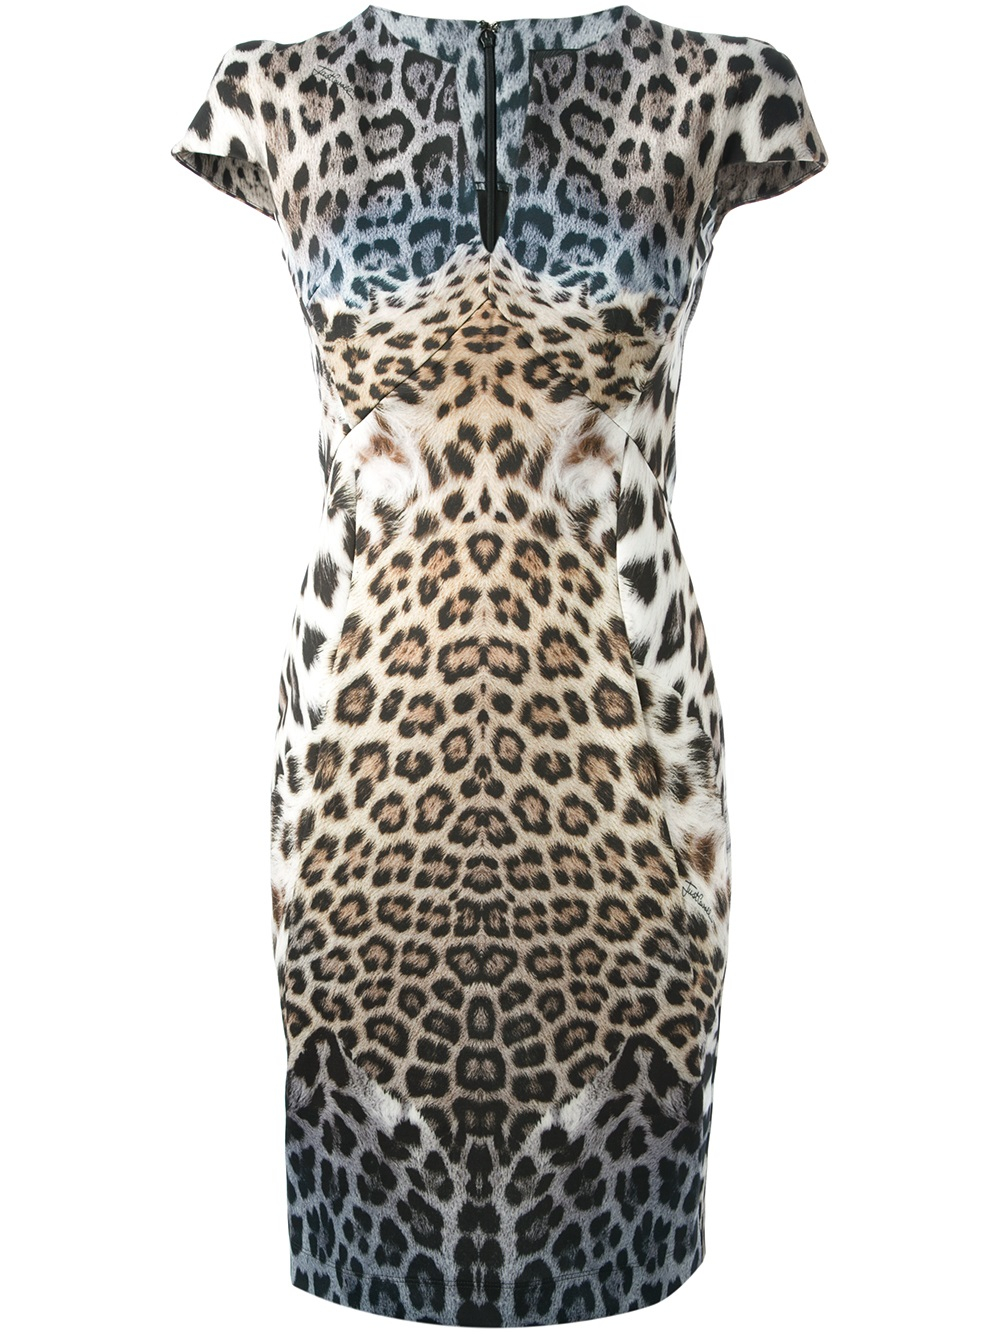 Just Cavalli Leopard Print Dress in Blue - Lyst